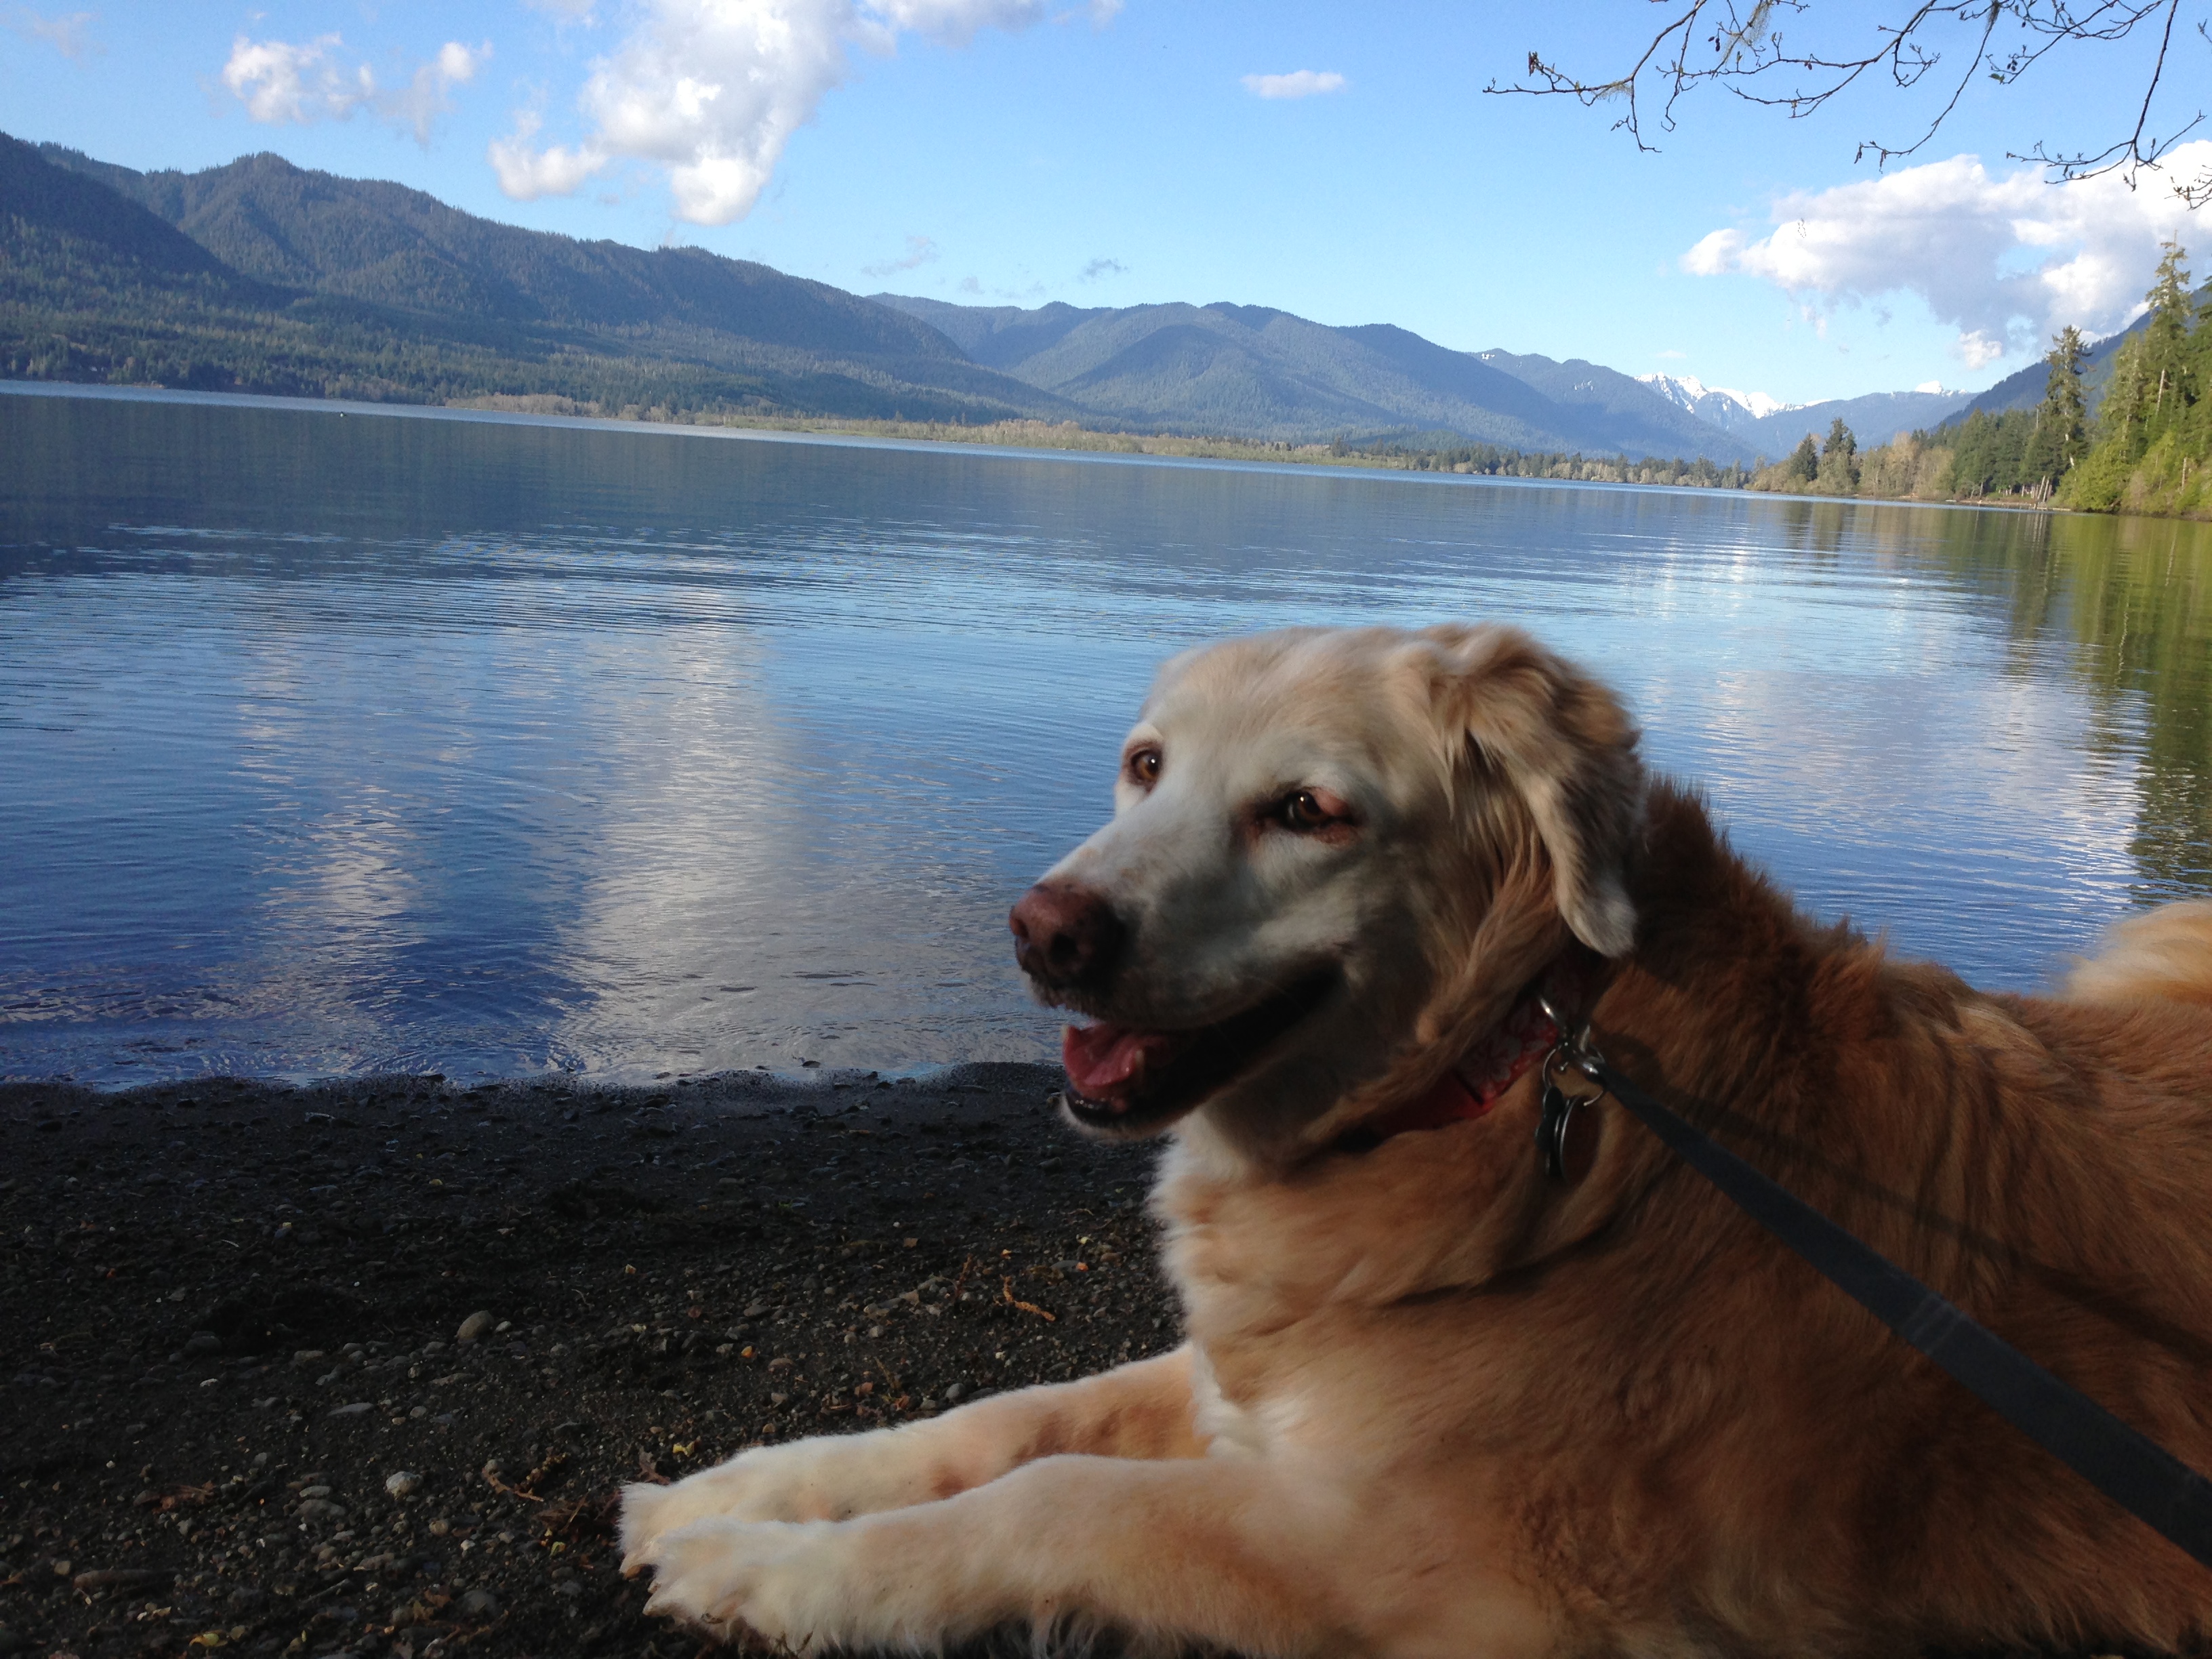 Dinah at Lake Quinalt